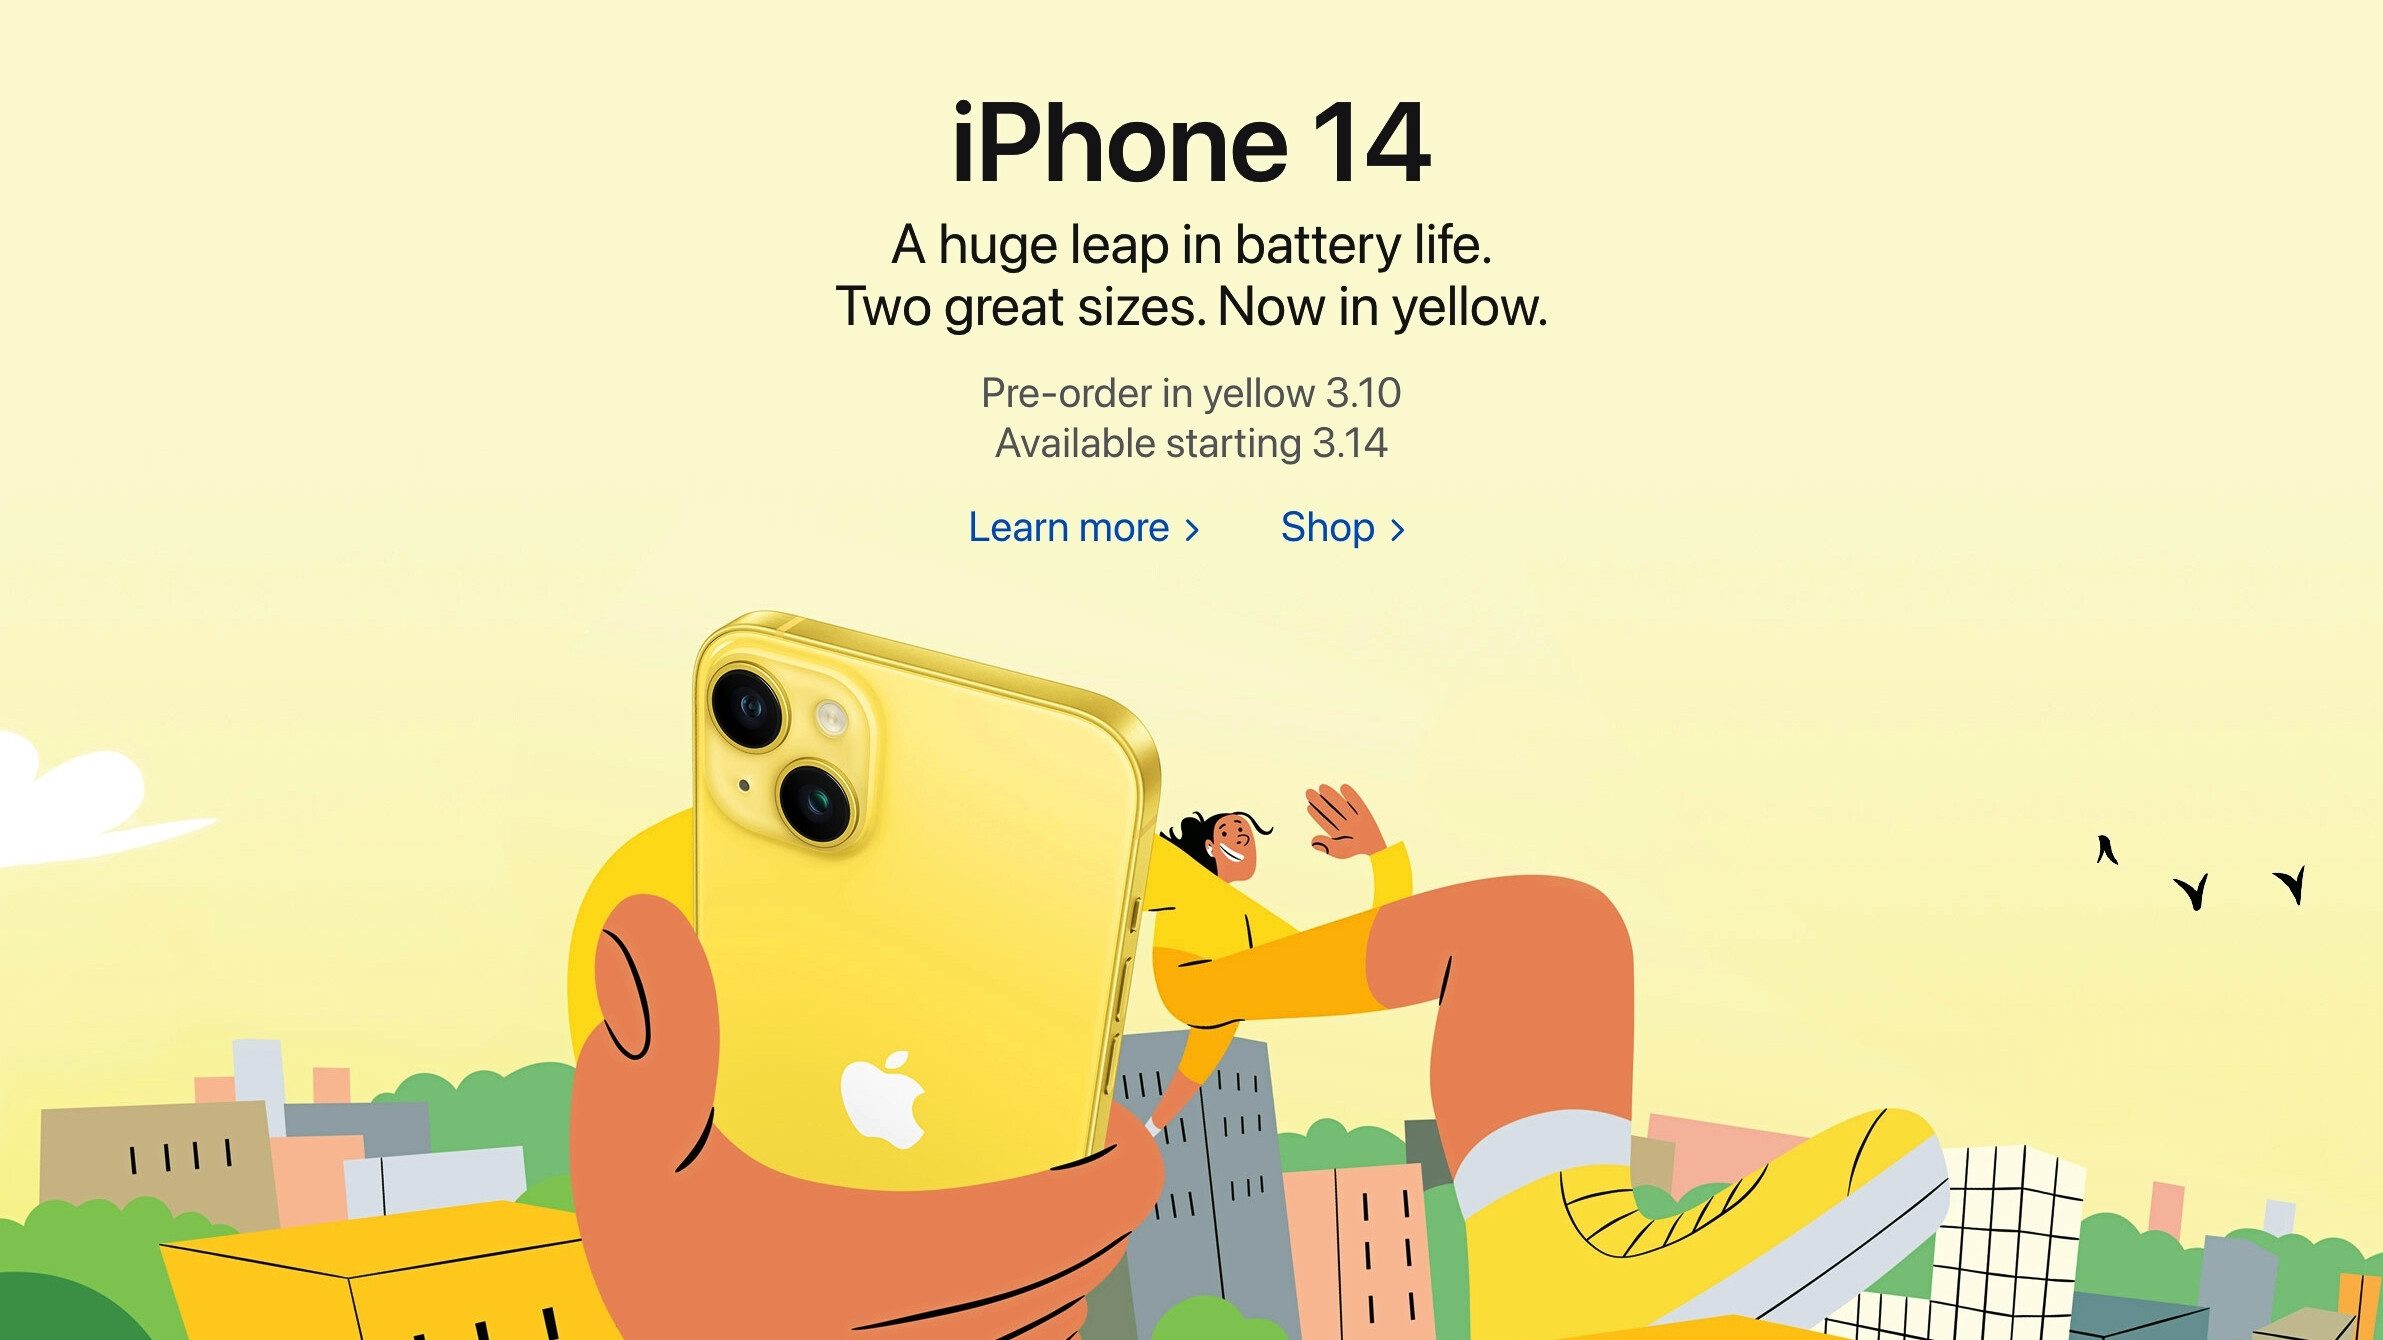 Apples Marketingmaschine läuft.  - Das neue gelbe iPhone 14 ist der schlechteste Kauf, den Sie derzeit tätigen könnten (Apples Denkspiele)